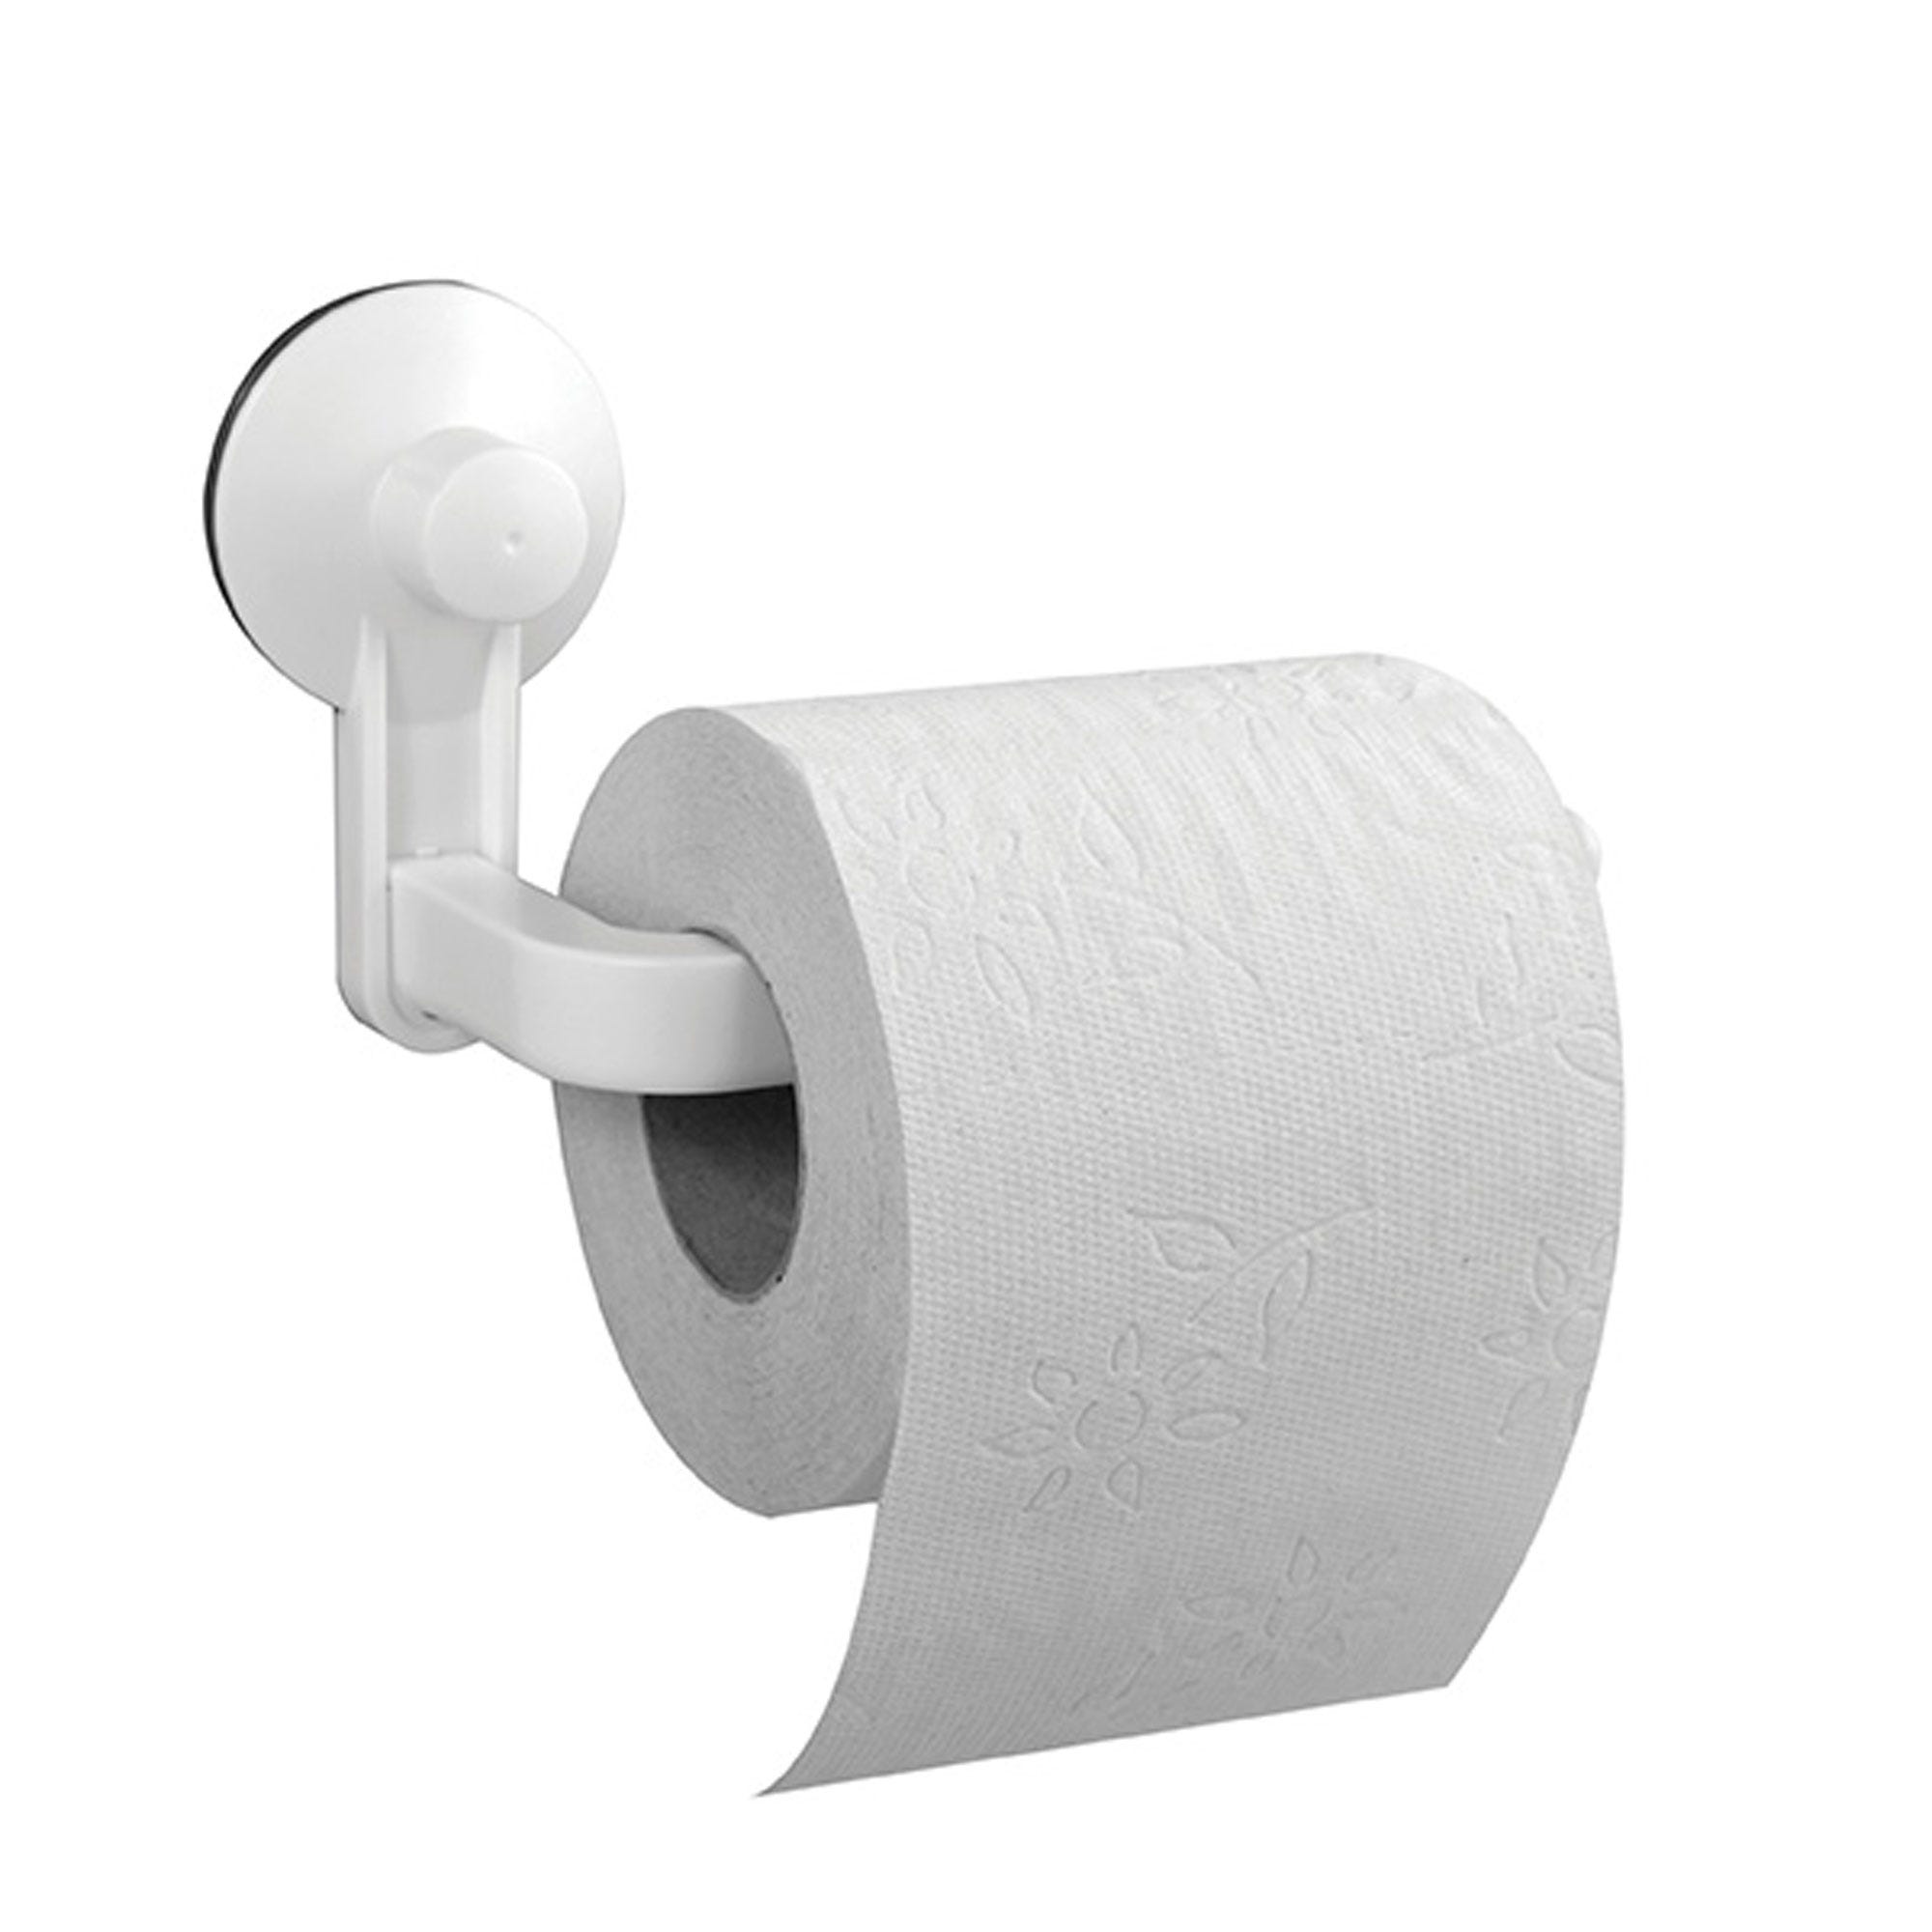 Comment mettre le rouleau de papier WC ?